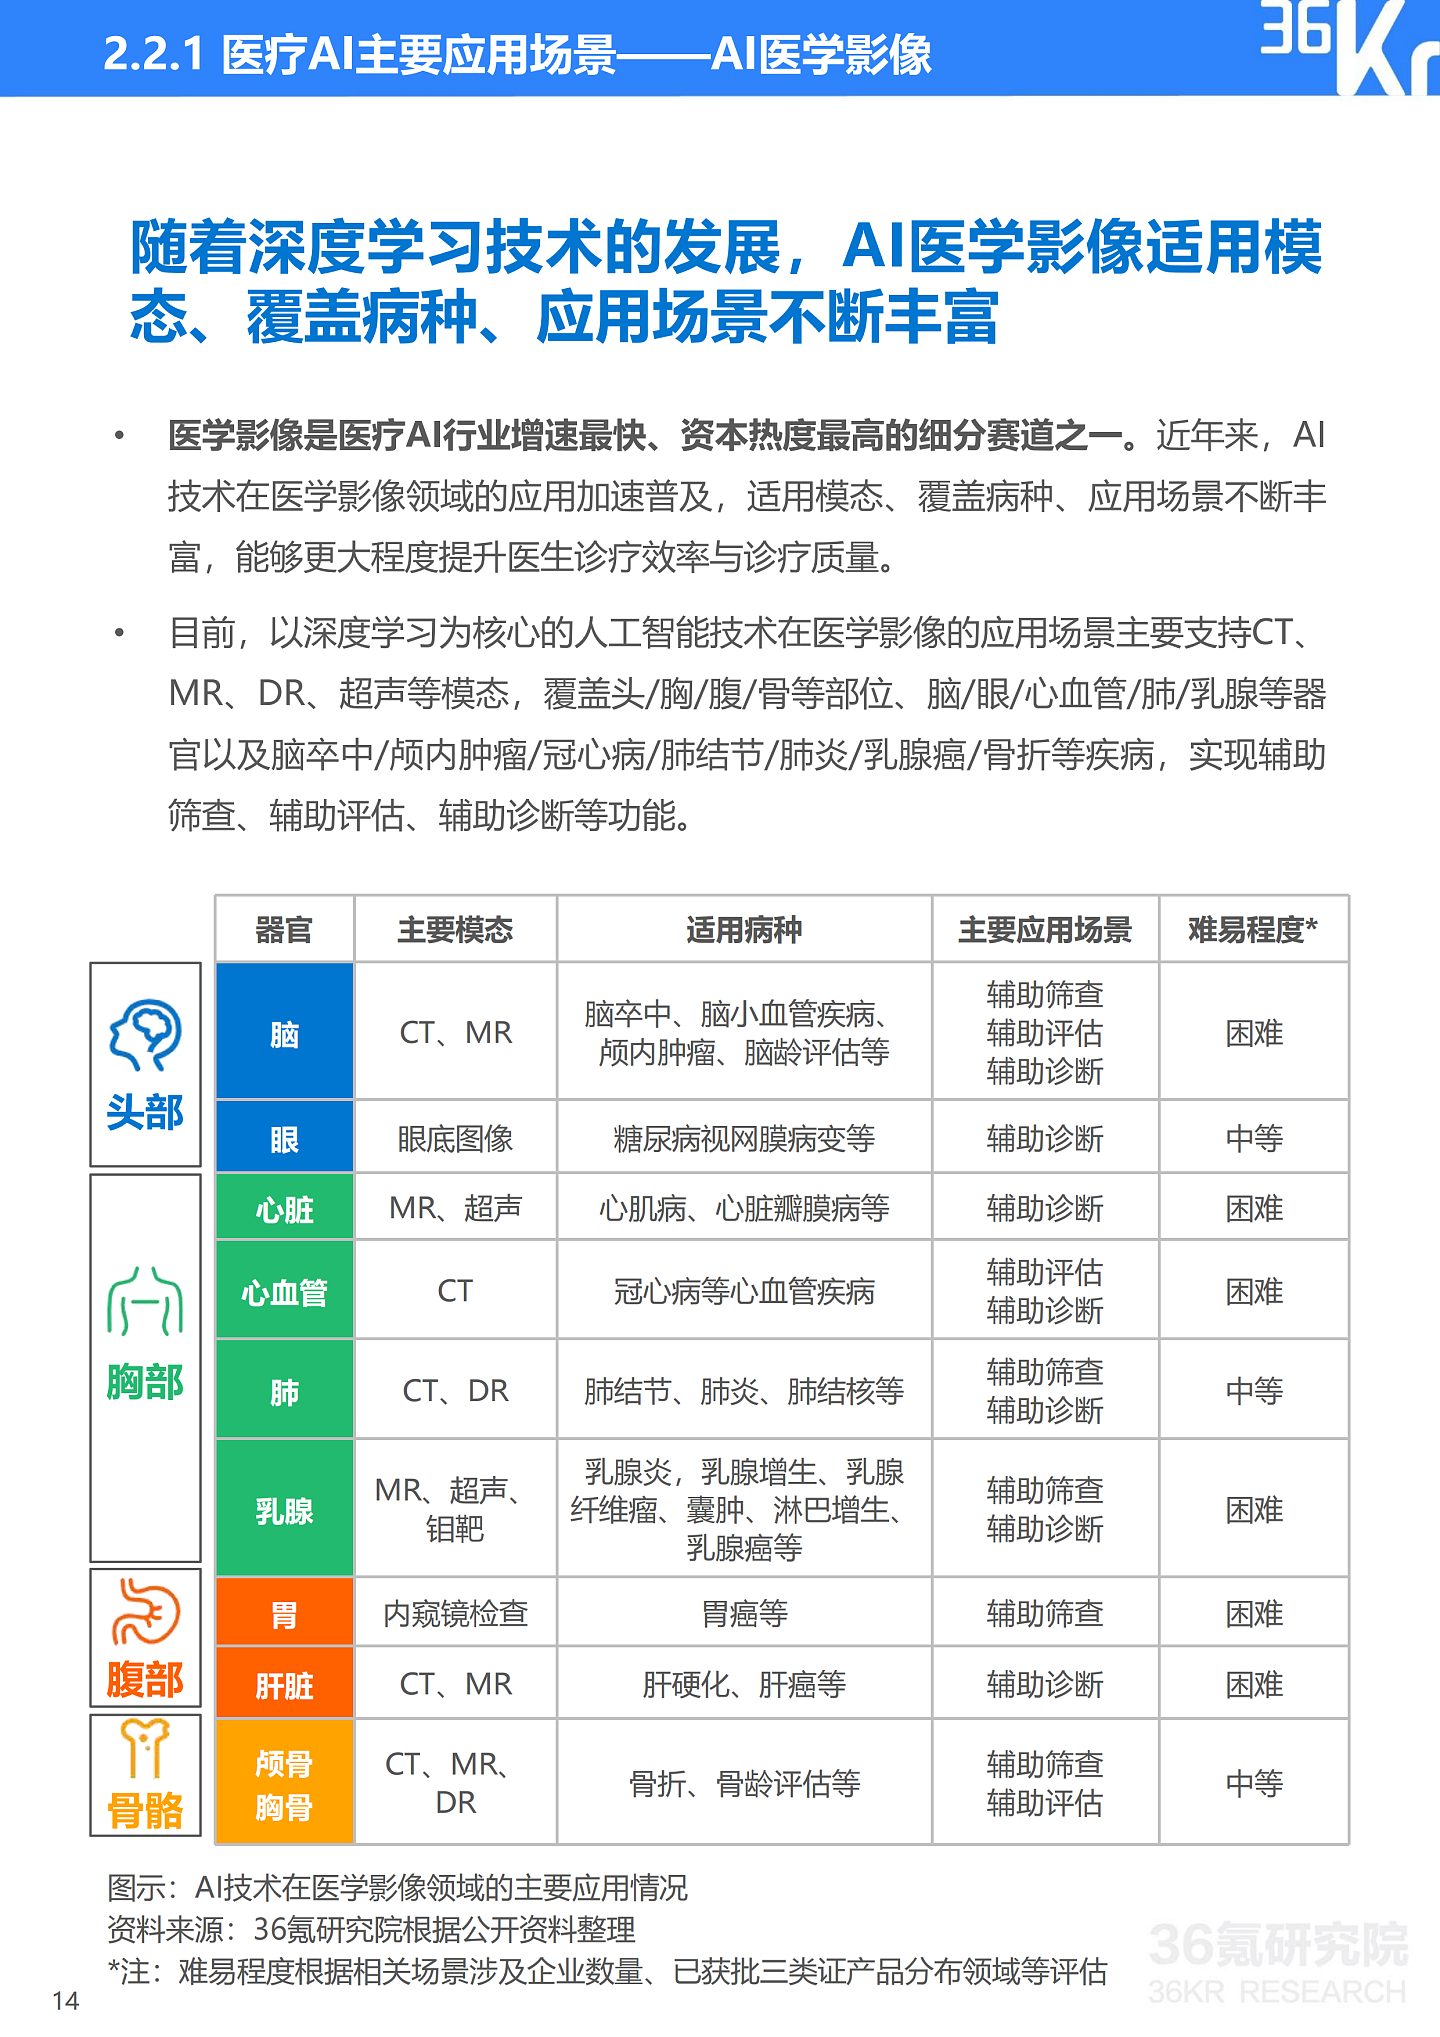 36氪研究院 | 2021年中国医疗AI行业研究报告 - 17